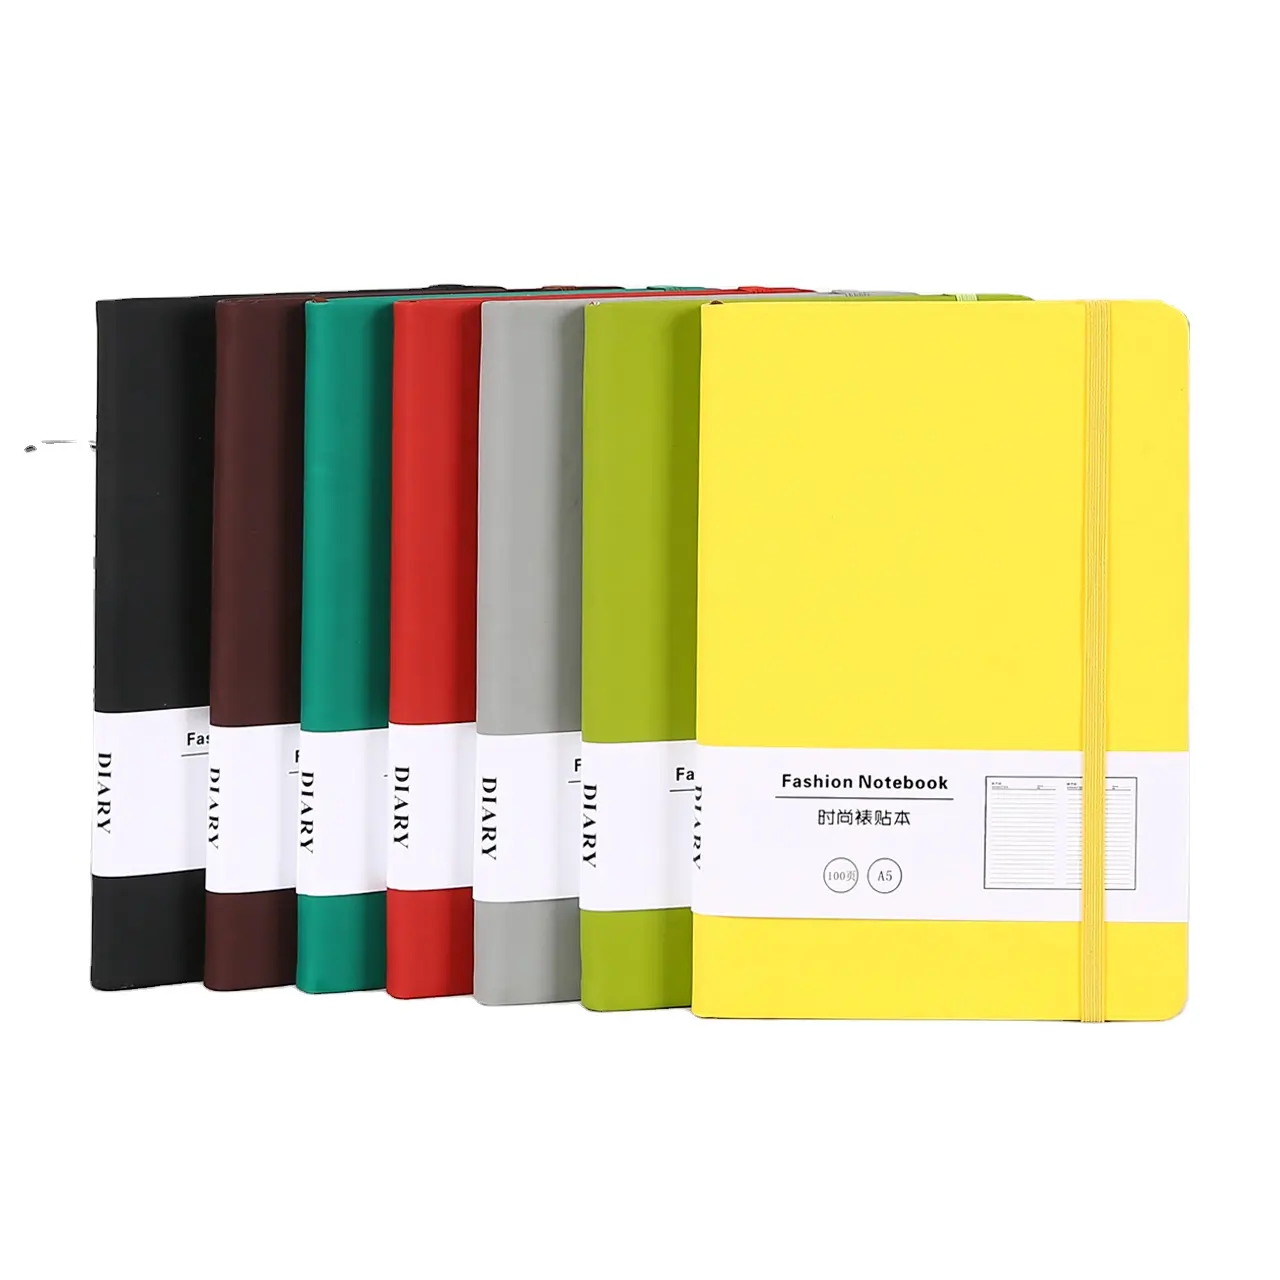 Jurnal Notebook kulit asli cokelat penawaran khusus dengan kualitas tinggi